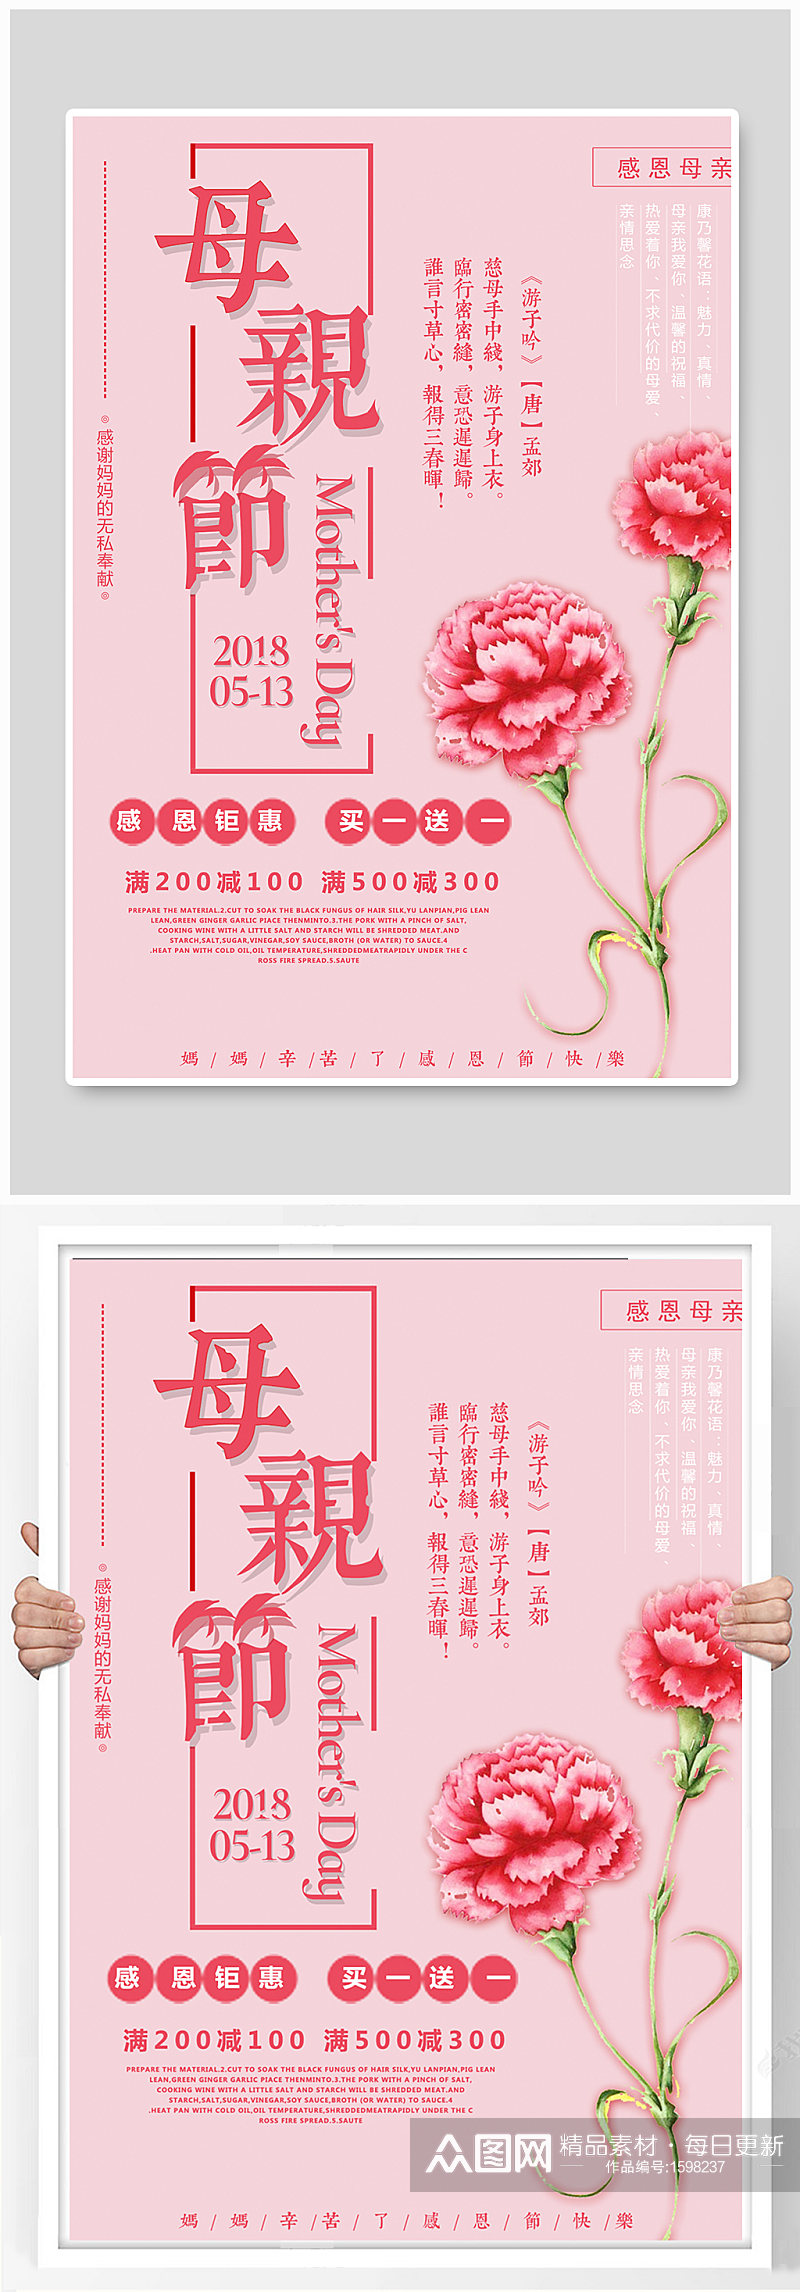 粉色大气唯美母亲节展示海报设计素材